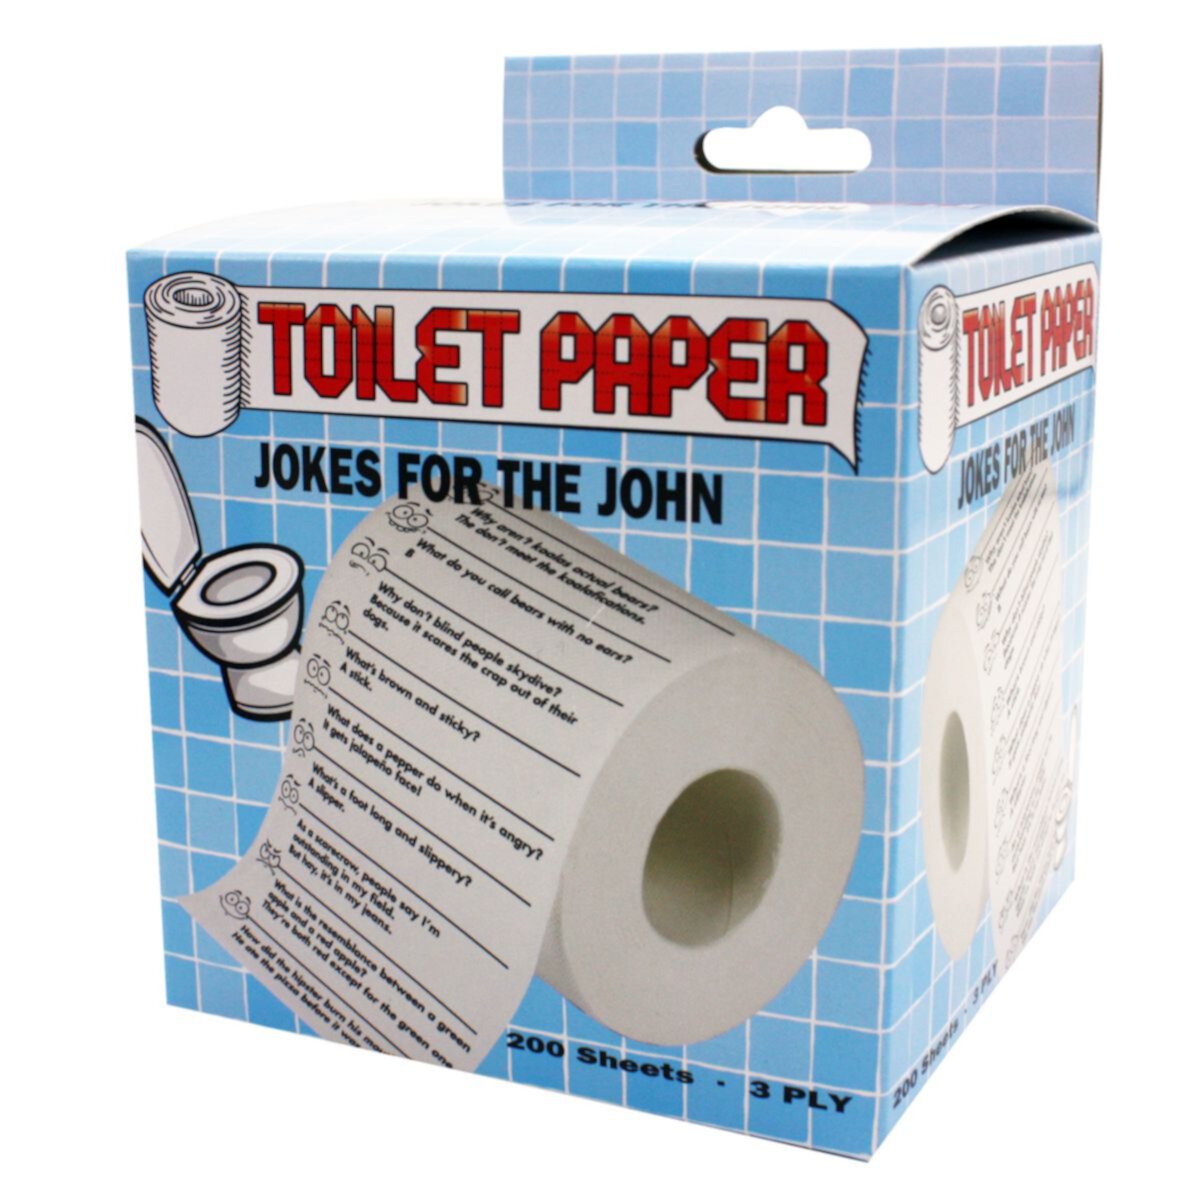 Анекдот про туалетную бумагу. John туалетная бумага. Загадка про туалетную бумагу. John Toilet. Toilet paper with jokes.